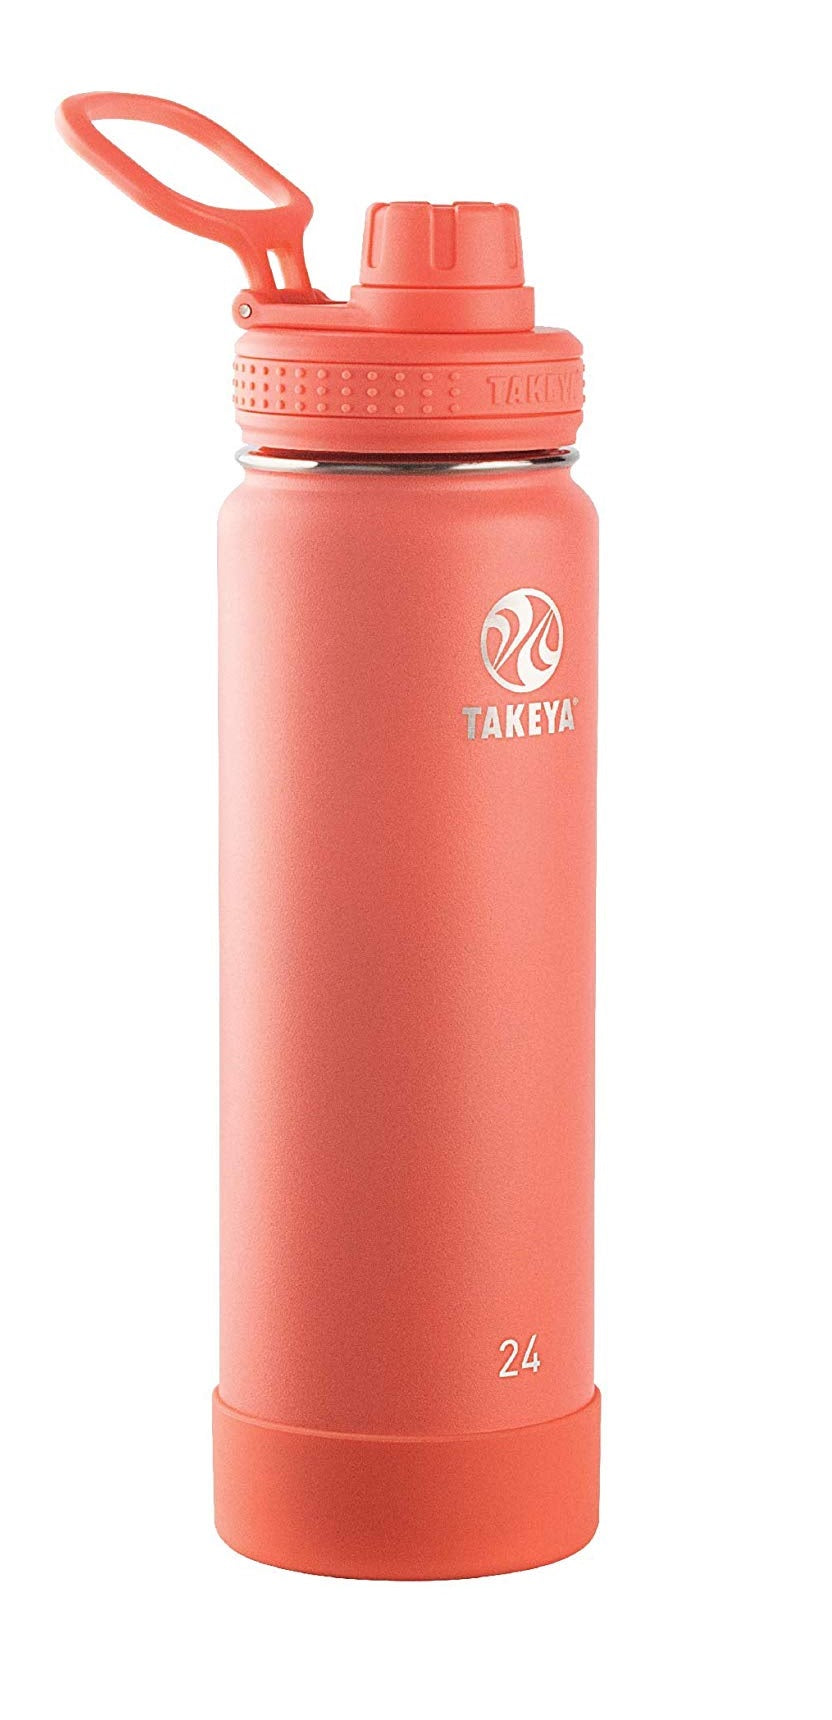 Takeya 51186 Actives Double Wall Water Bottle, 24 oz.